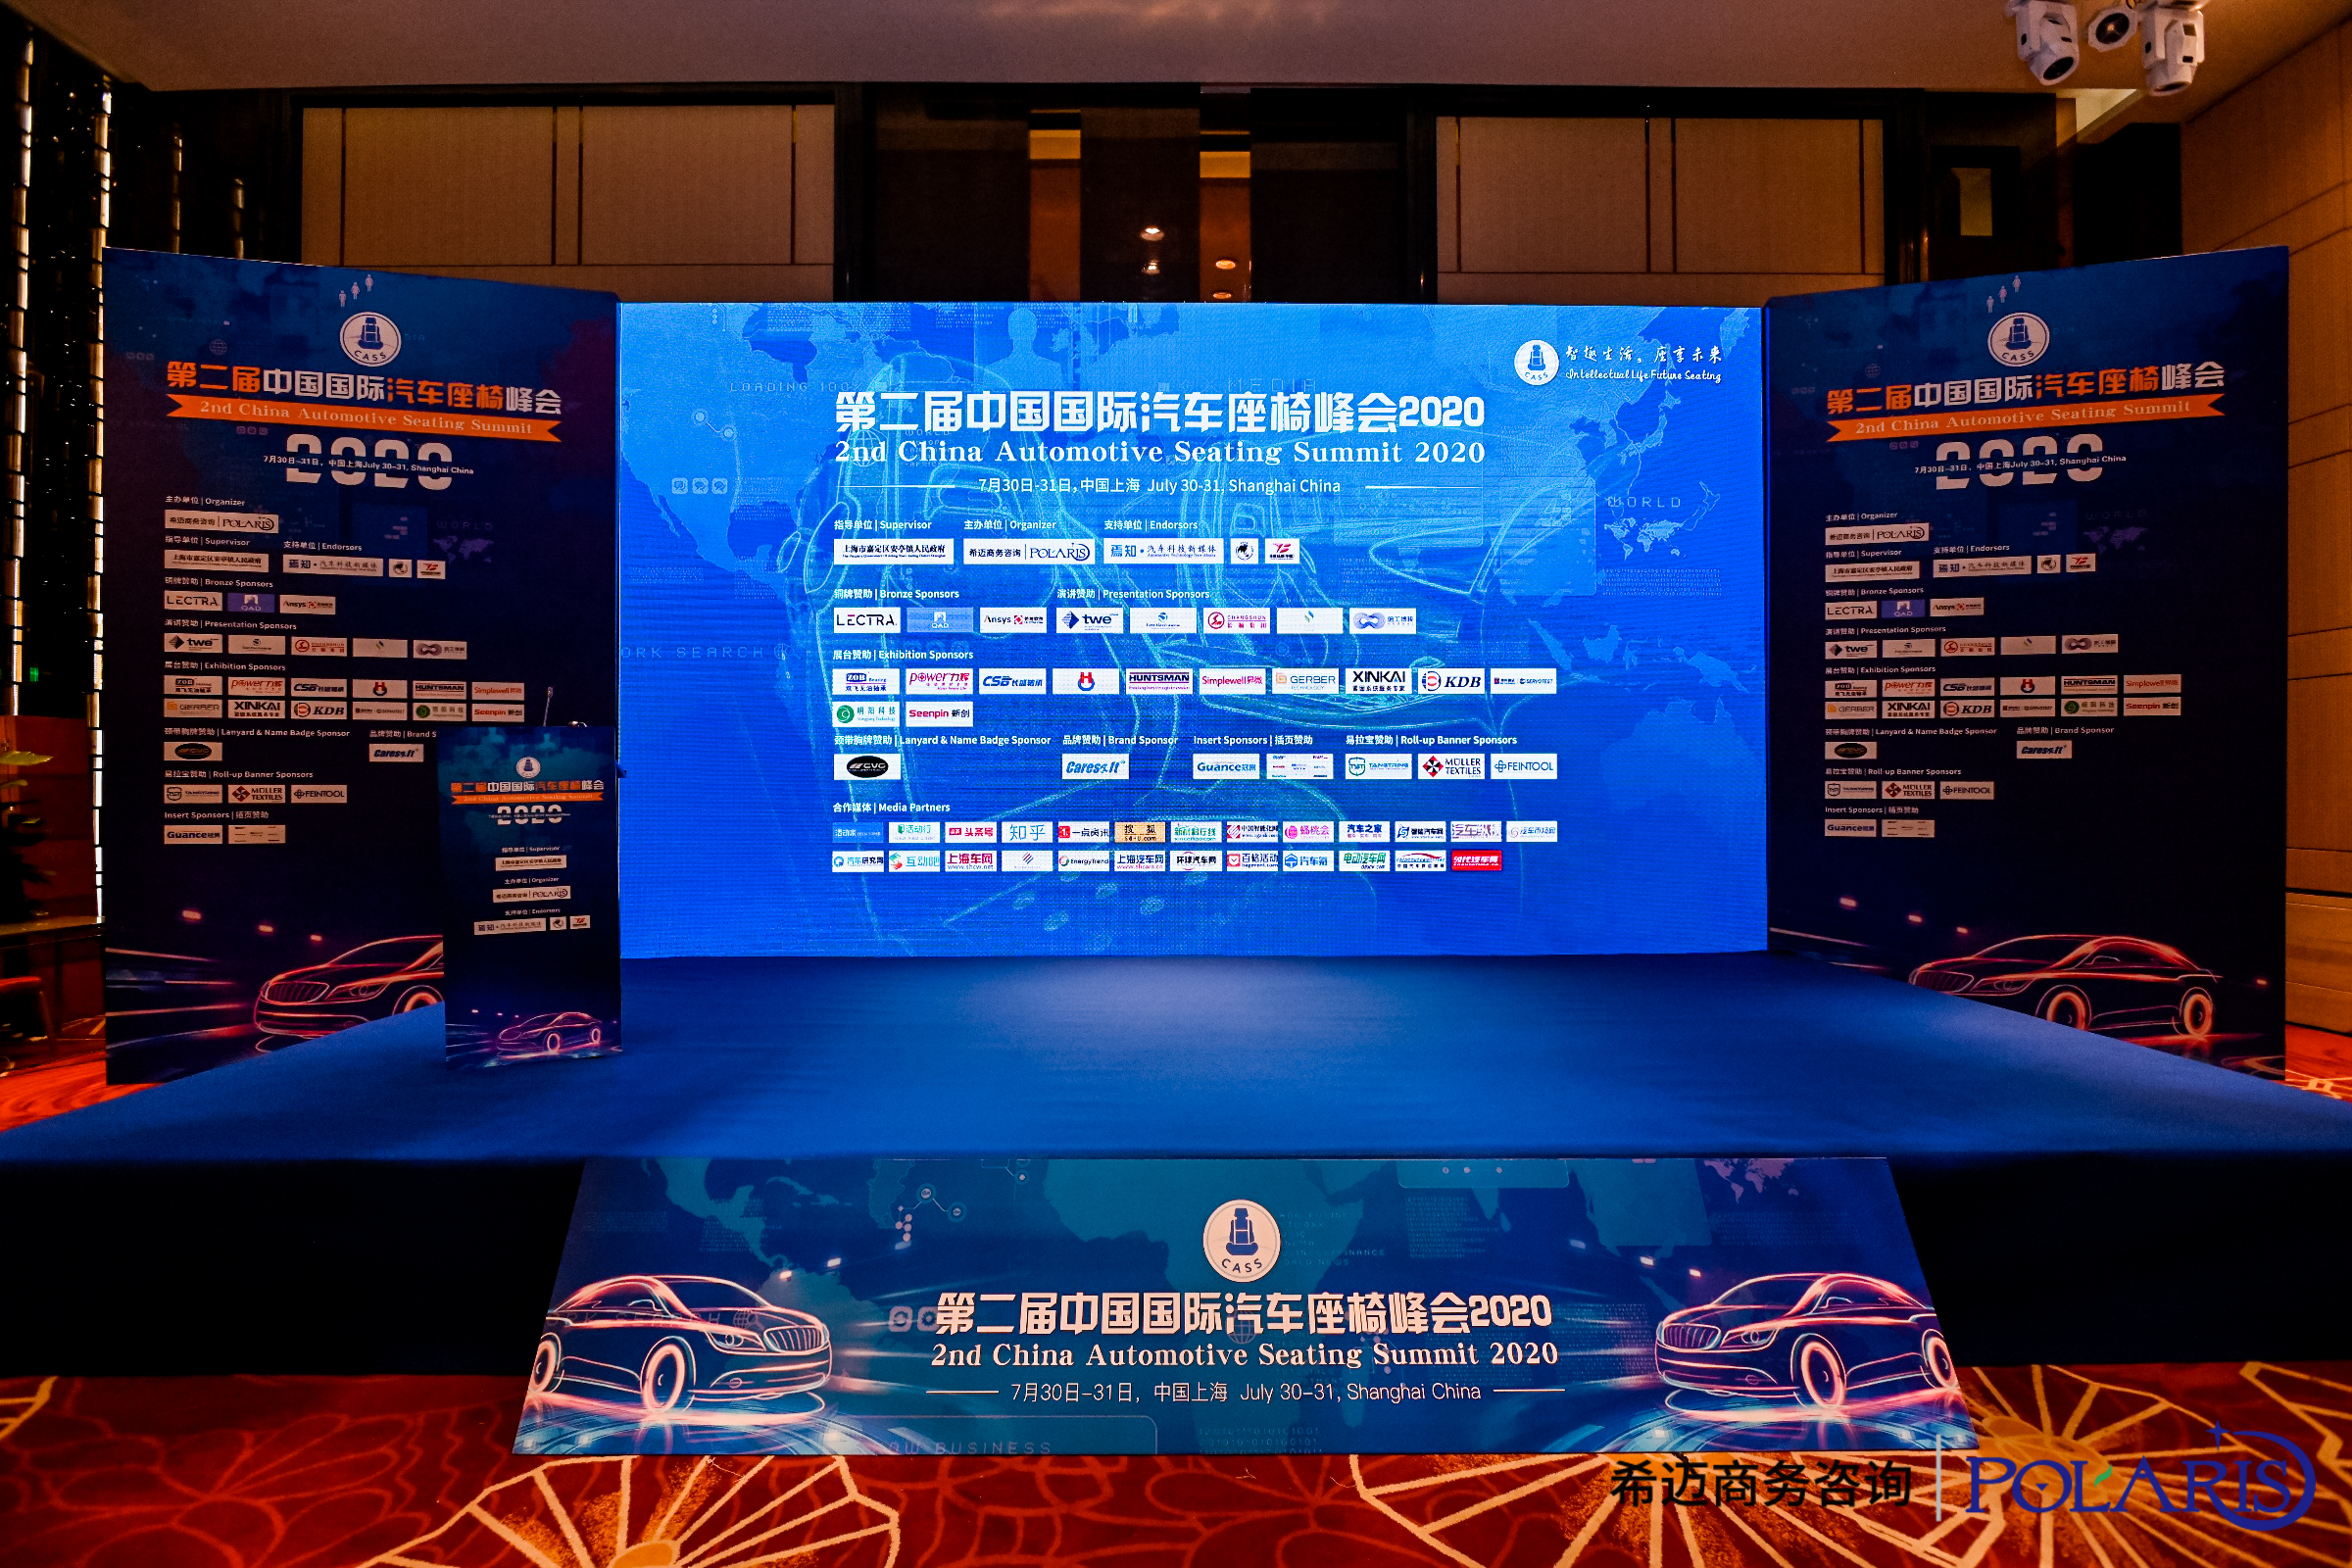 升微科技有限公司参加2020年第二届中国国际汽车座椅峰会